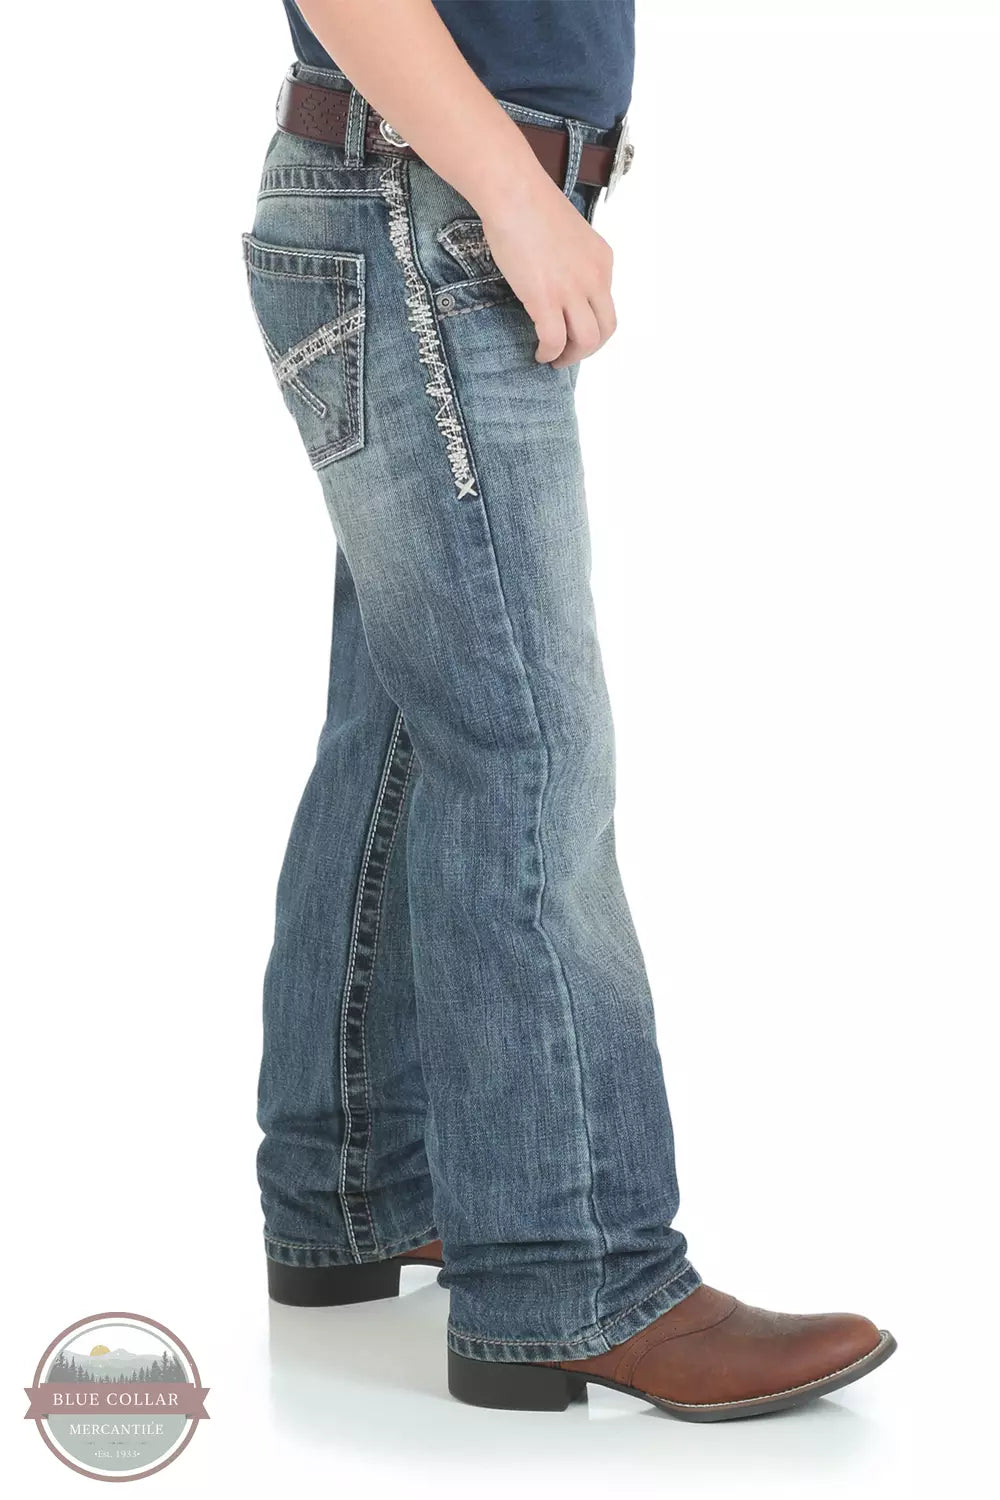 Wrangler 42JWXBB Kids 20X Vintage Bootcut Slim Fit Jeans in Breaking Barriers Side View